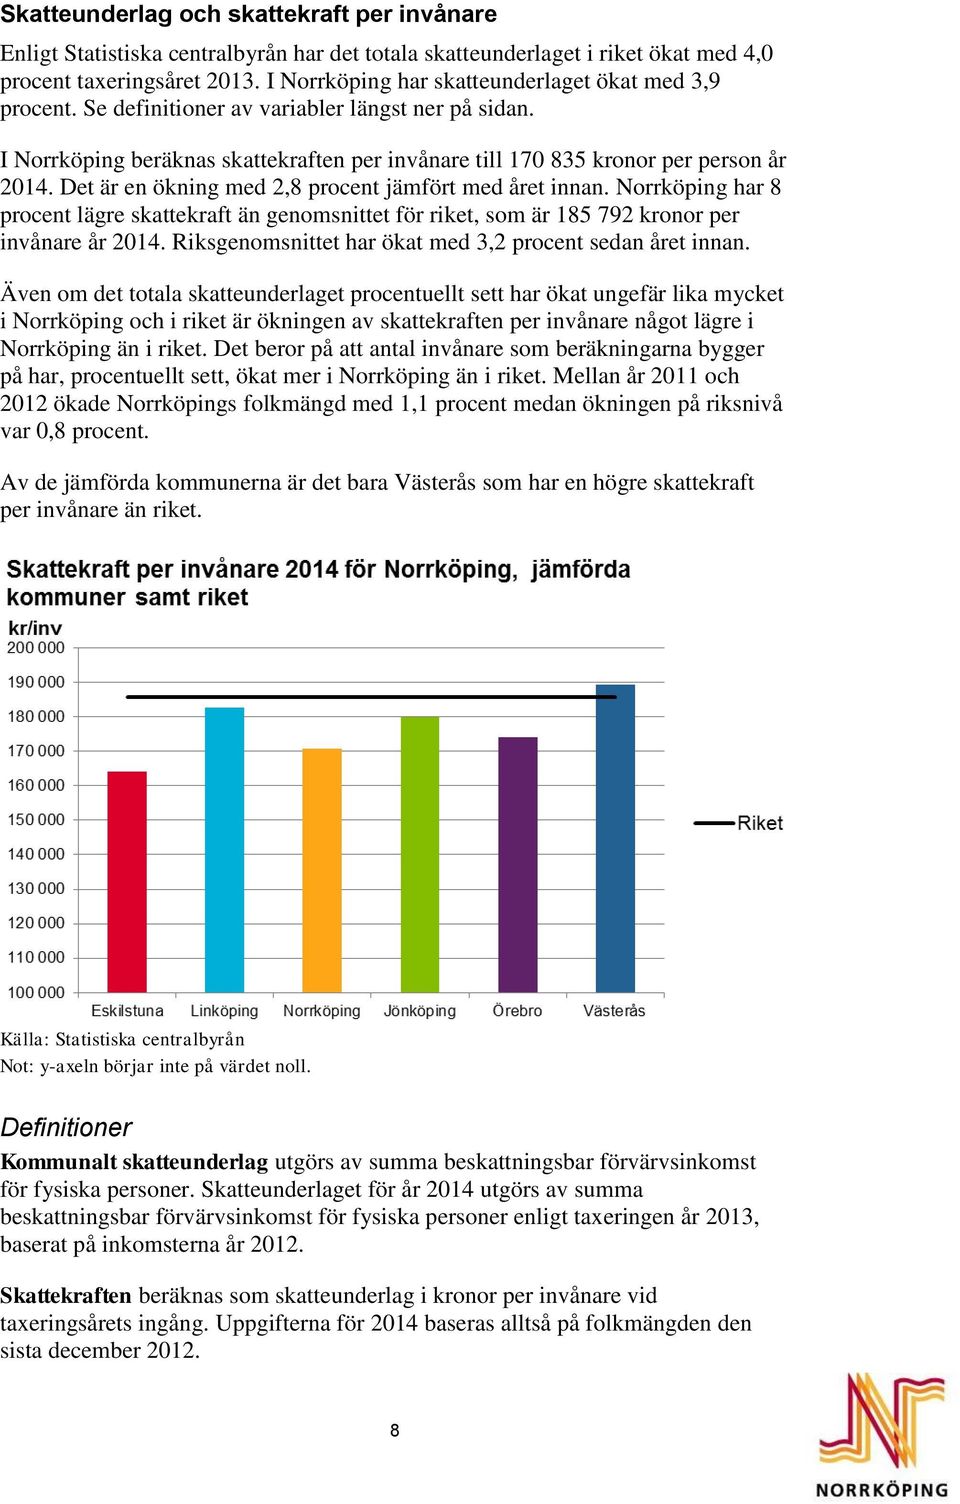 Det är en ökning med 2,8 procent jämfört med året innan. Norrköping har 8 procent lägre skattekraft än genomsnittet för riket, som är 185 792 kronor per invånare år 2014.